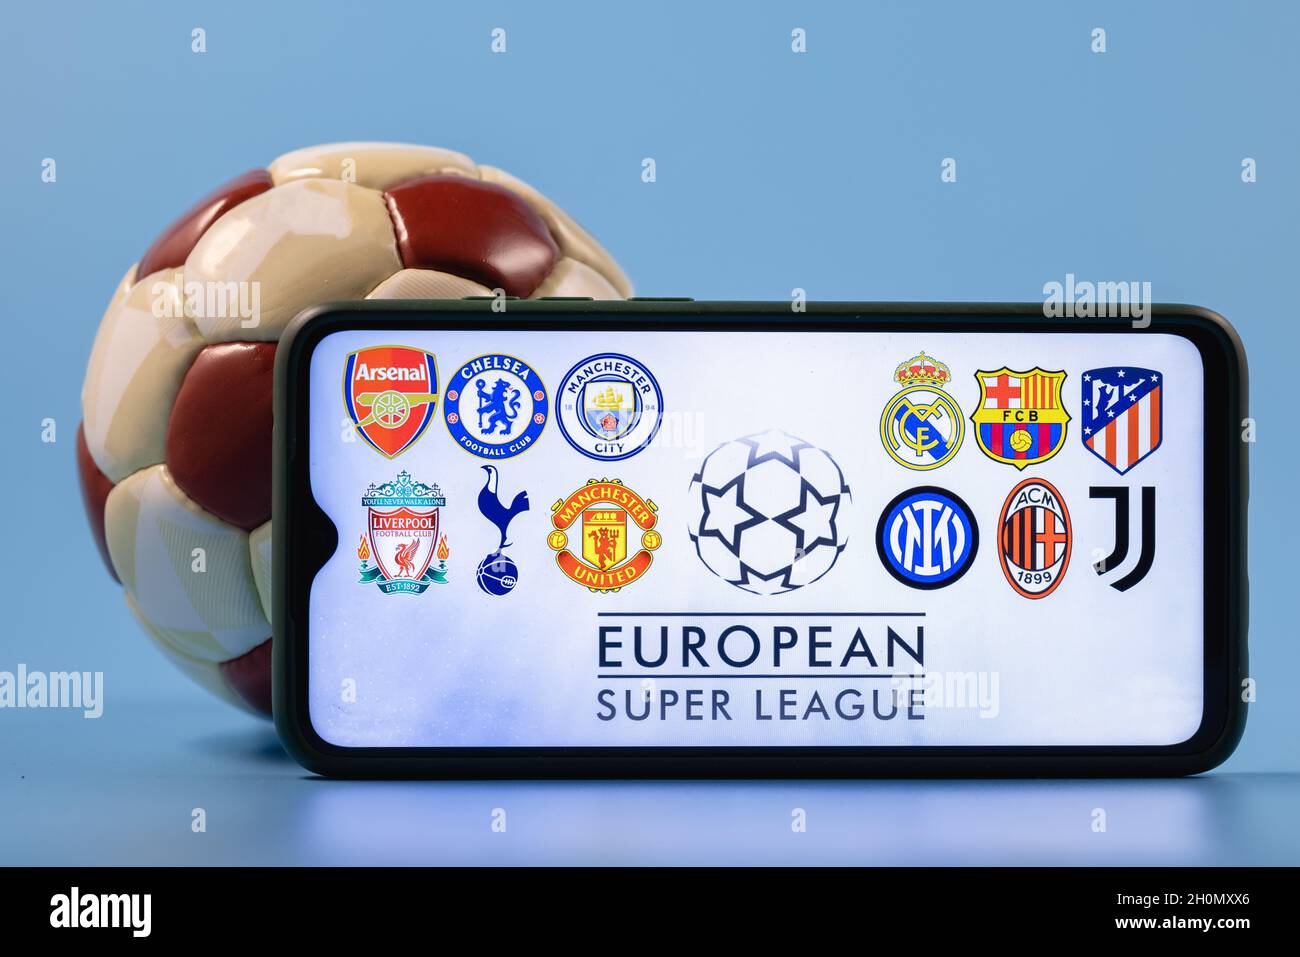 Die Super League ist ein jährlich stattfindendes Vereinsfußballwettbewerb,  an dem zwanzig der besten und reichsten europäischen Fußballvereine  teilnehmen Stockfotografie - Alamy